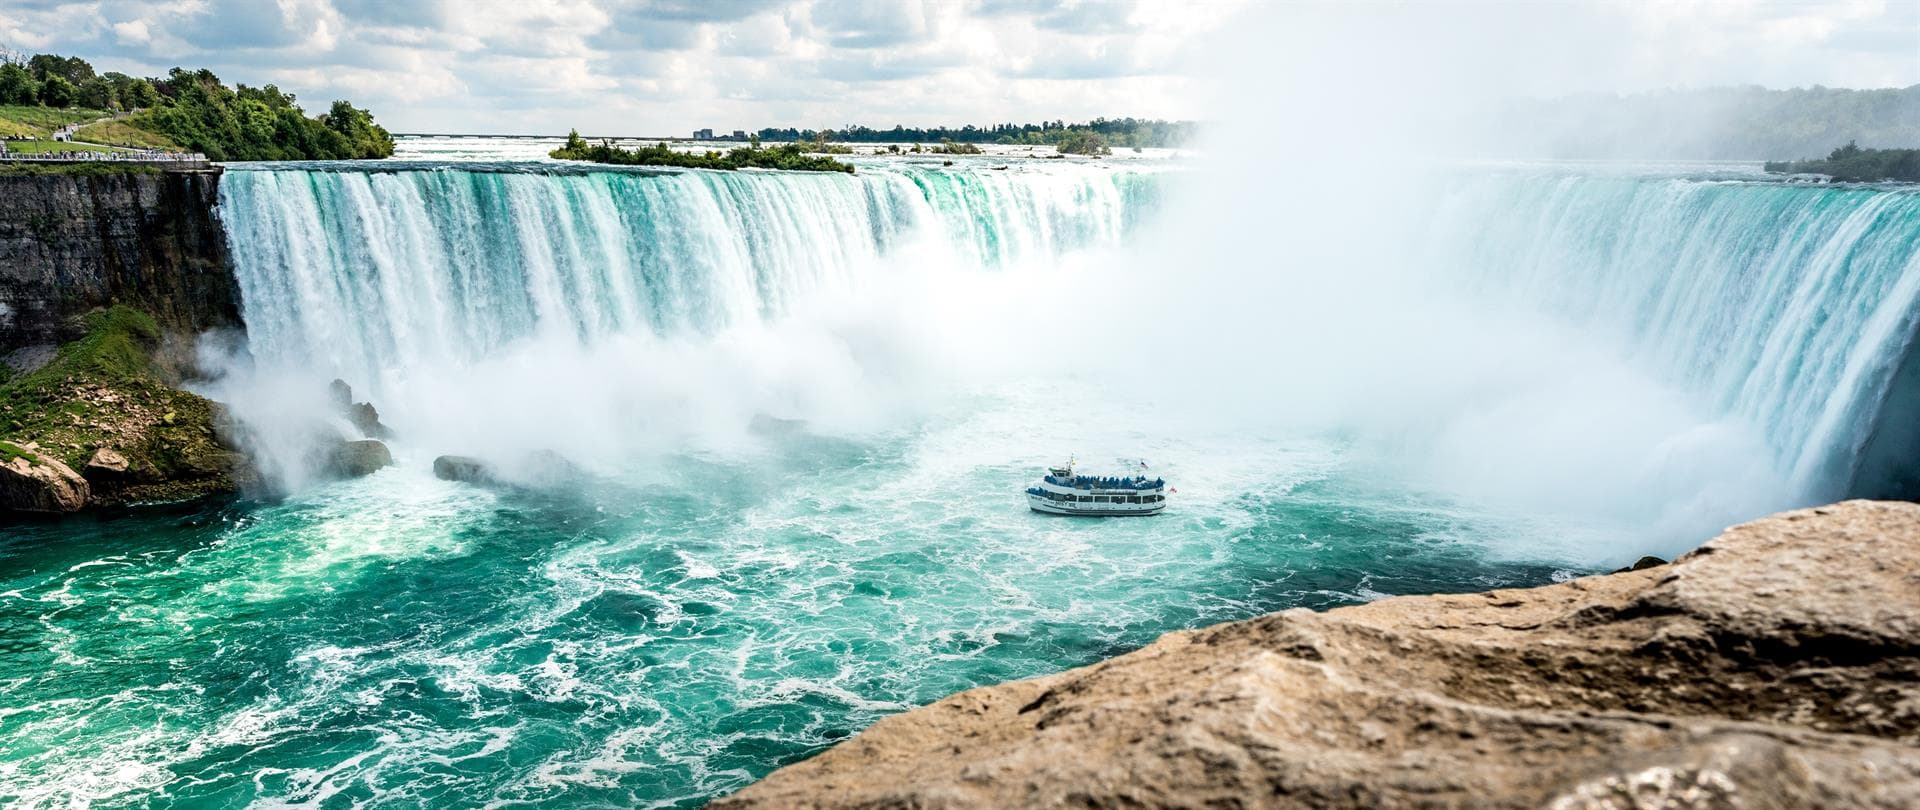 Cataratas del Niagara - Viajes Carballo Galicia